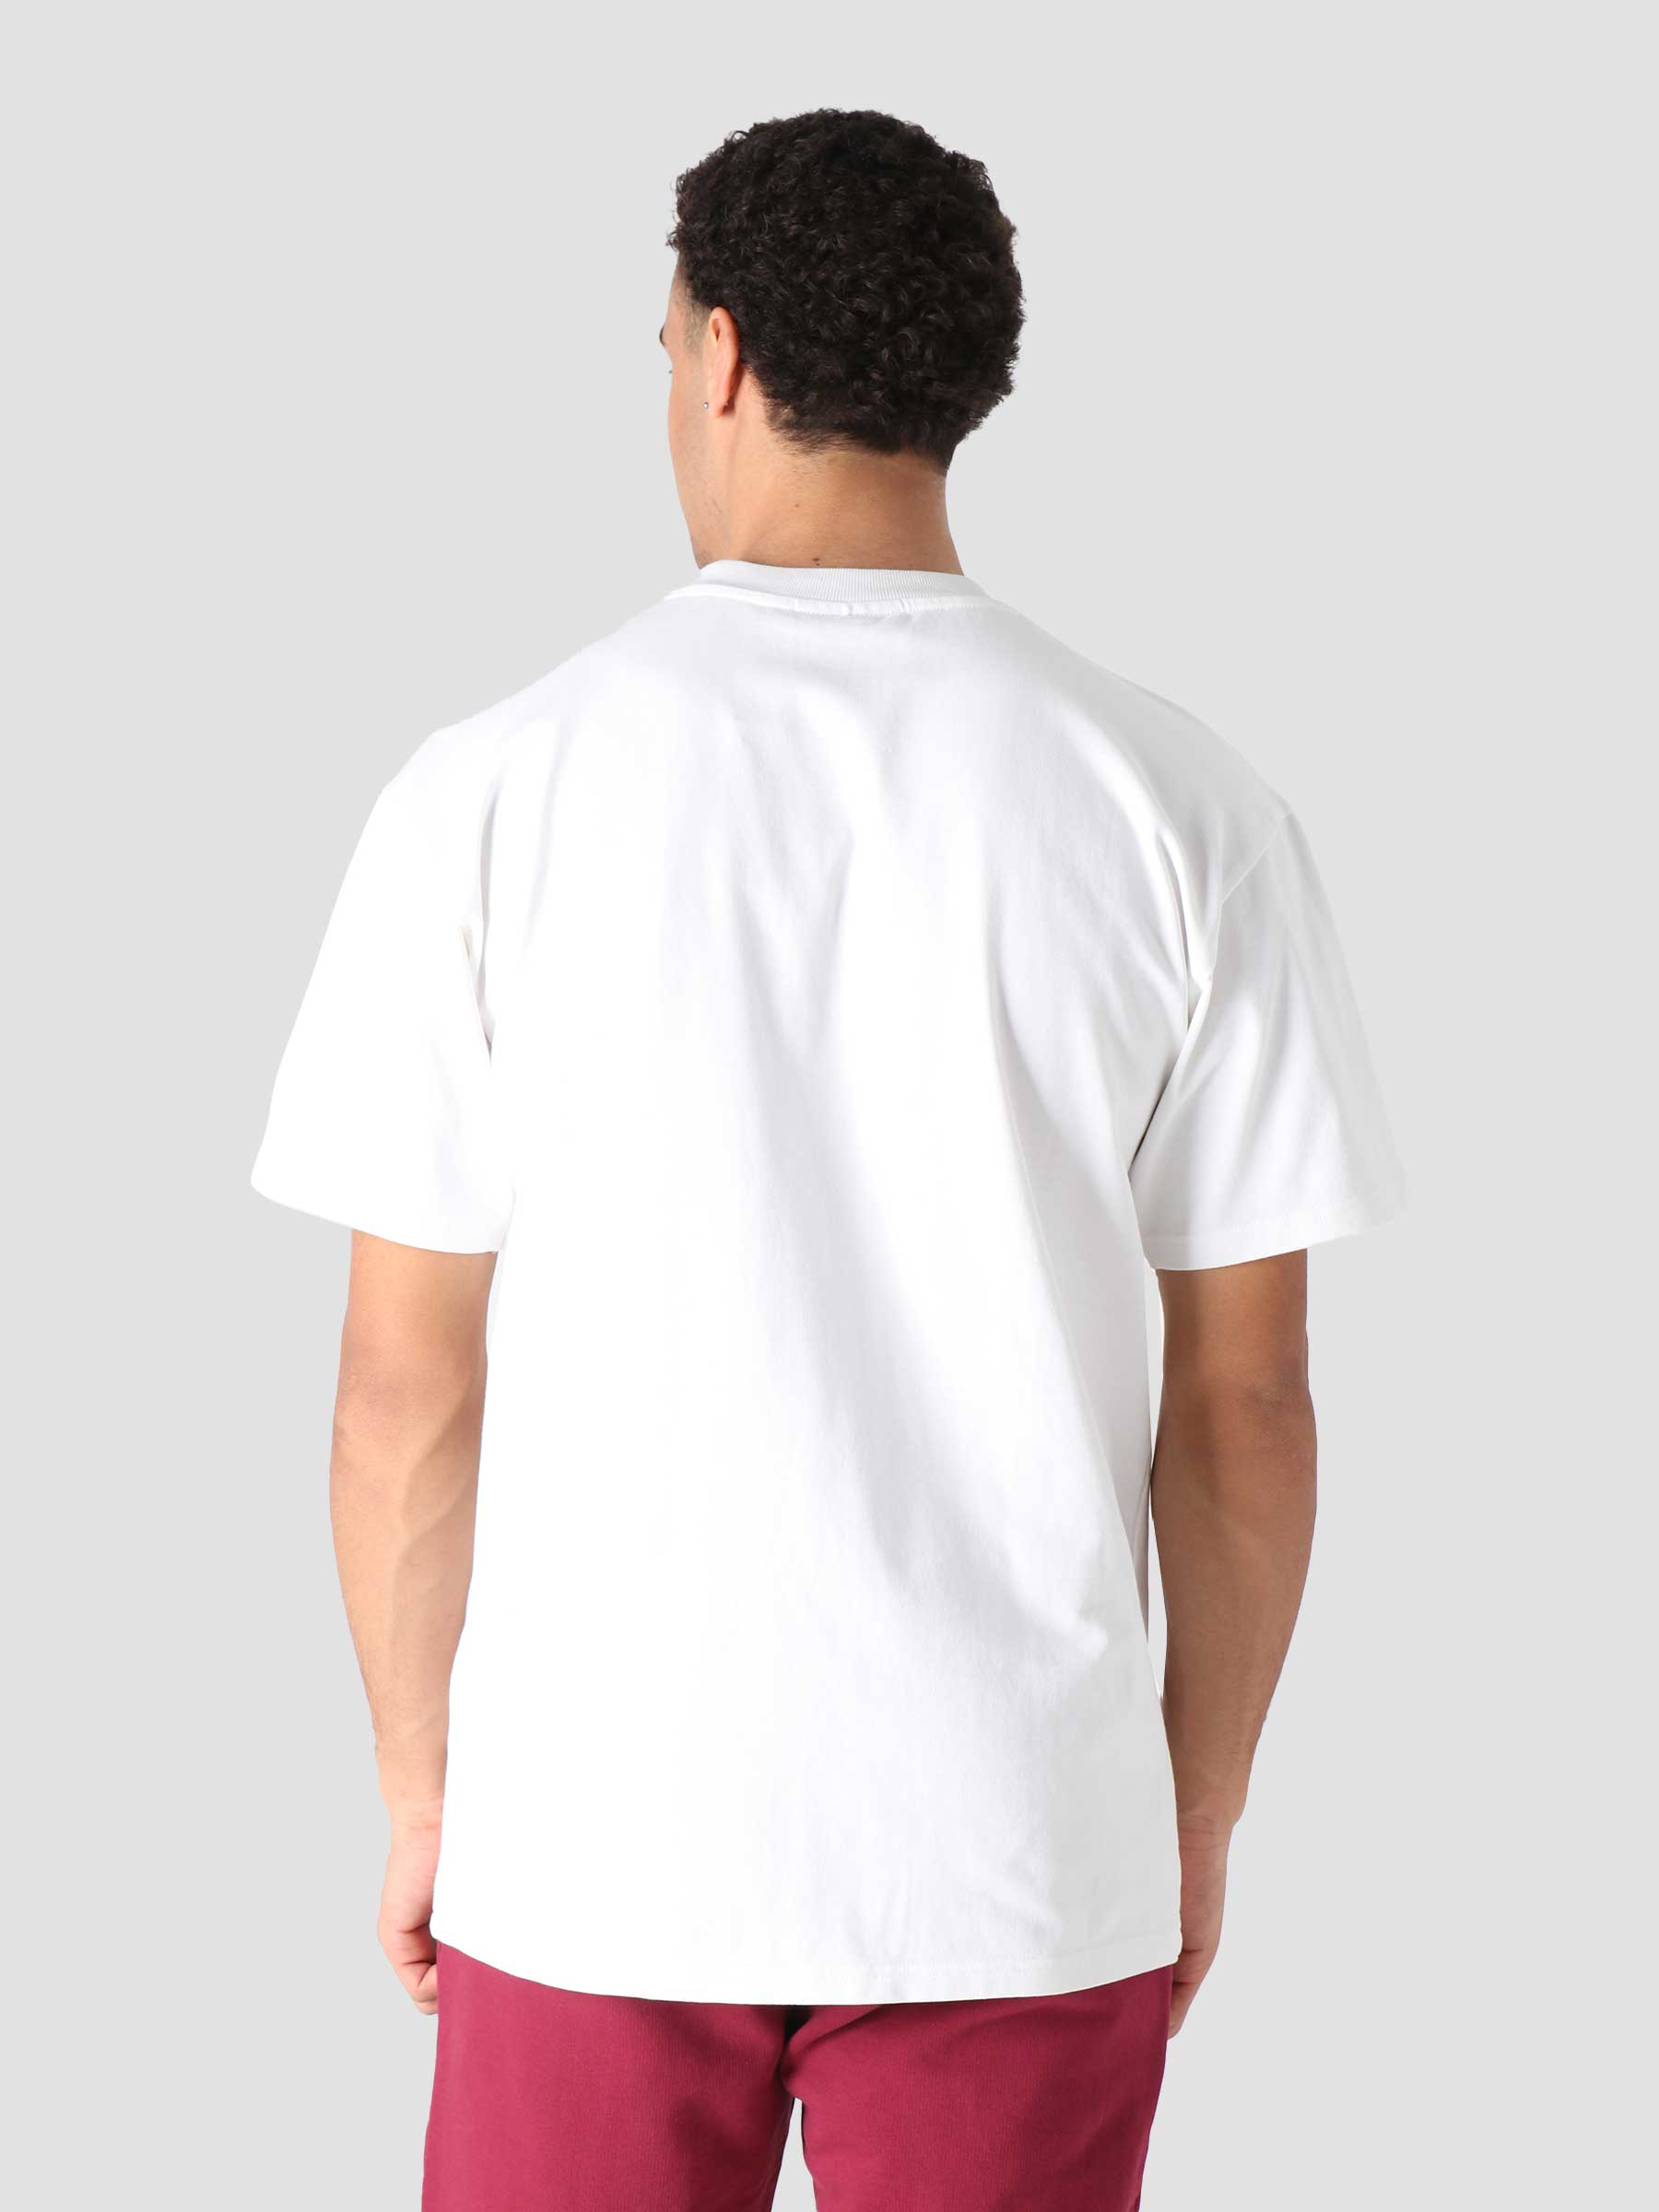 NTF Tournament T-shirt White